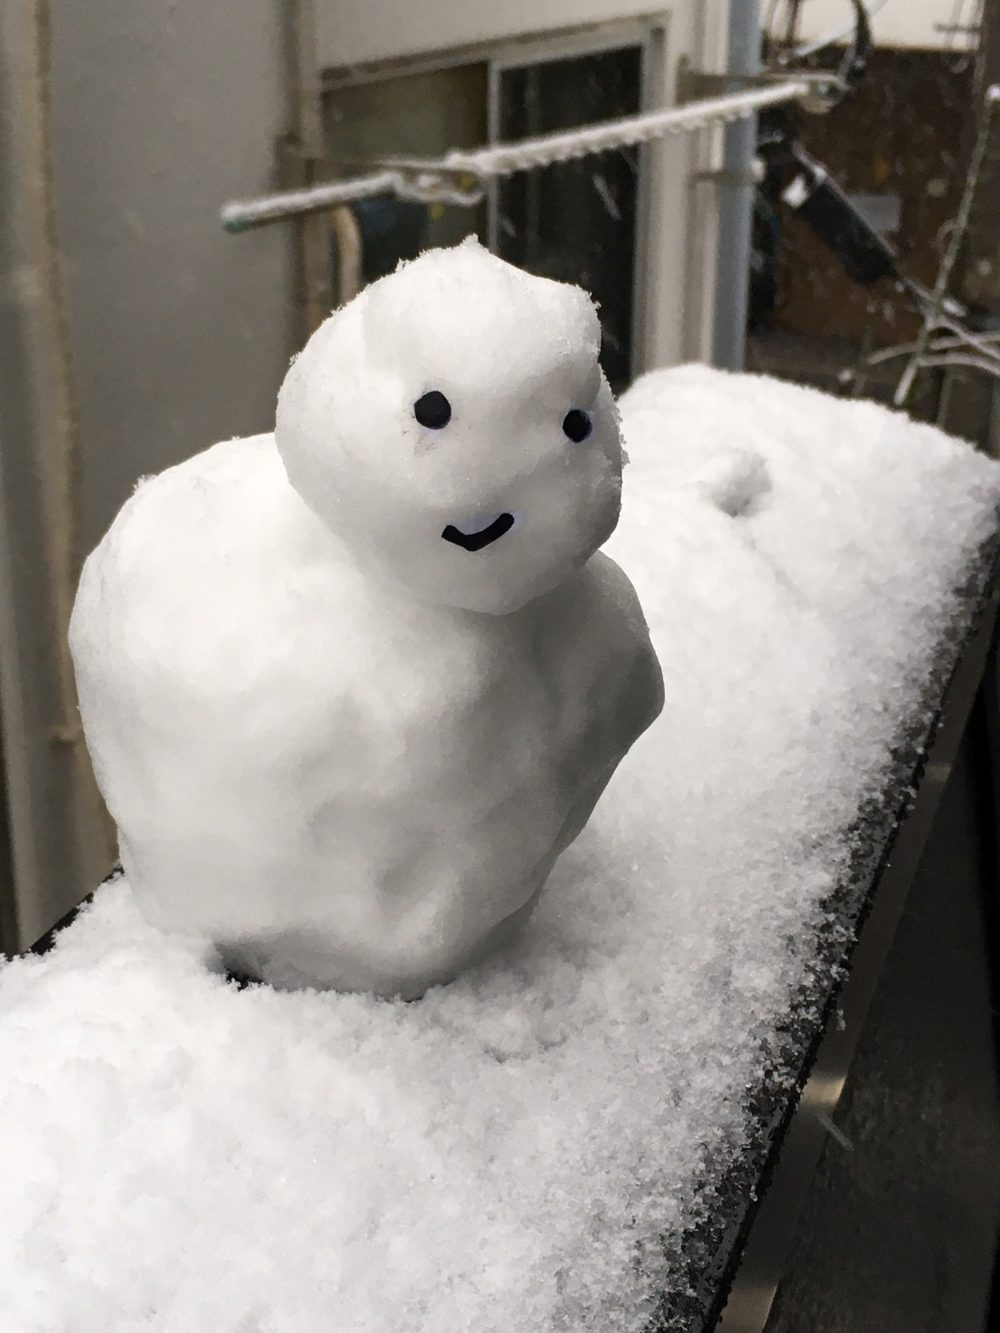 Made a snowman